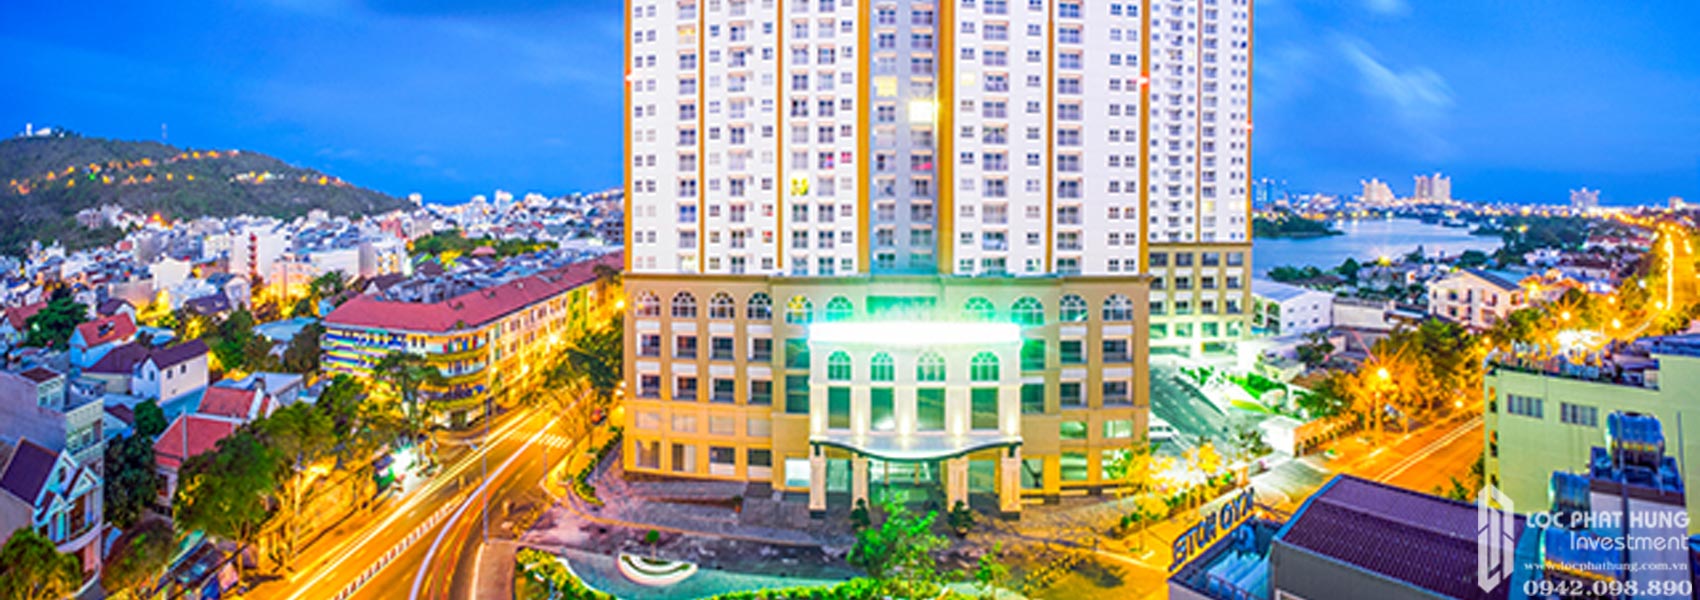 Phối cảnh tổng thể dự án căn hộ Căn hộ chung cư Melody Vung Tau Đường Võ Thị Sáu chủ đầu tư Hưng Thịnh Corp